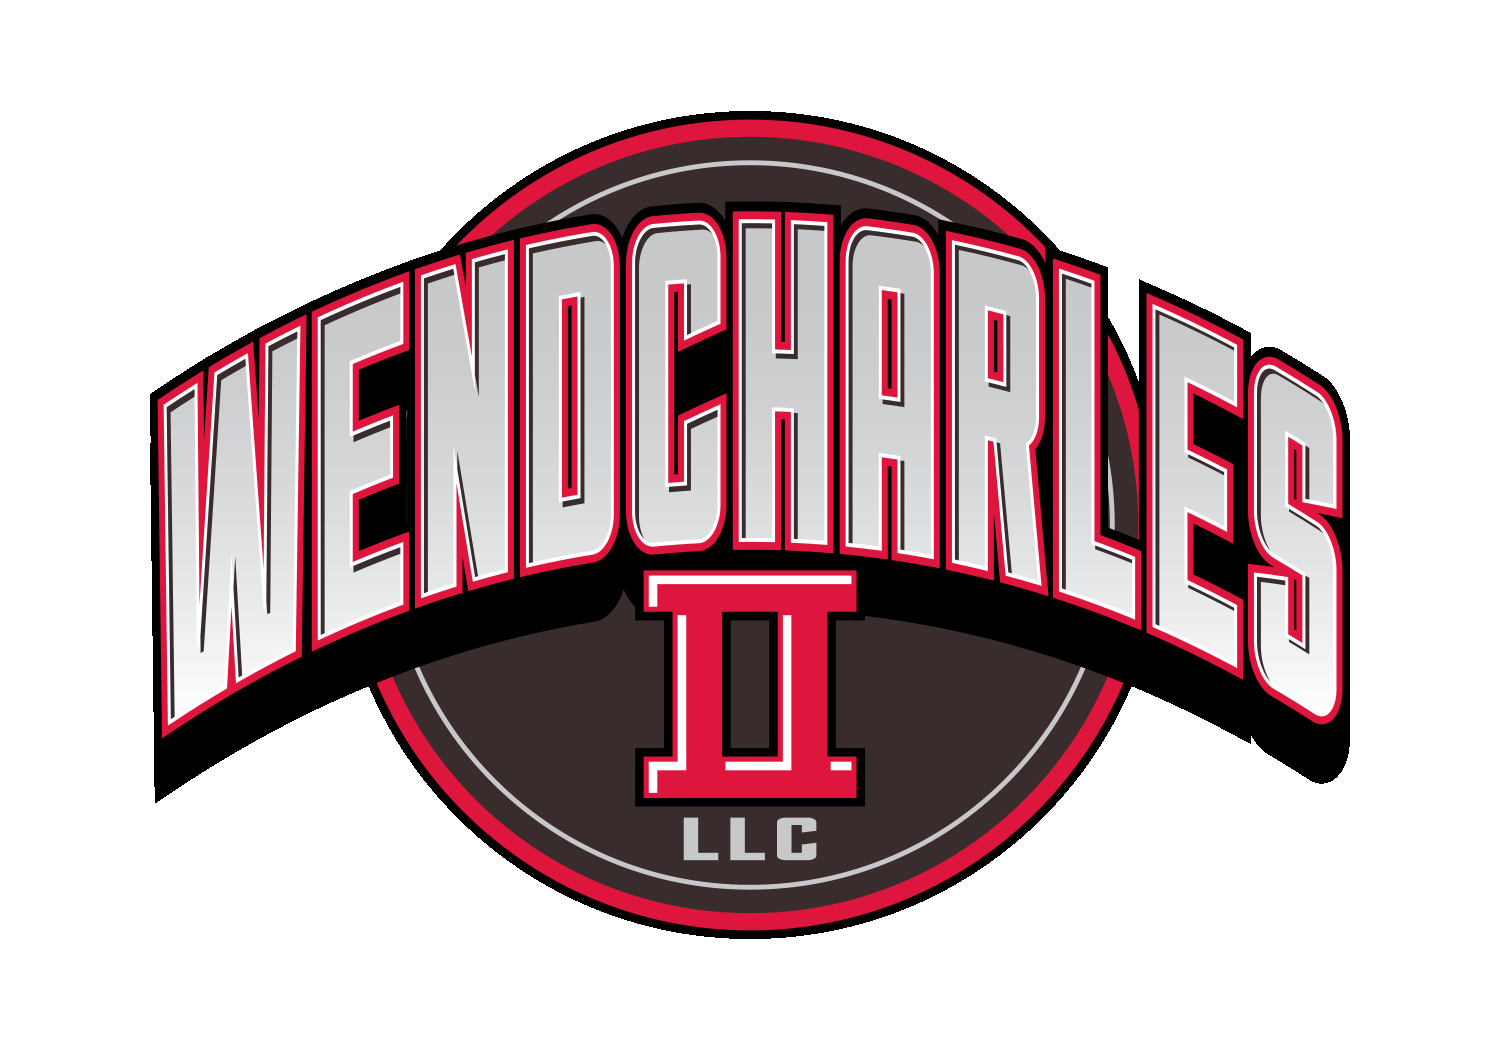 Wendcharles II, LLC